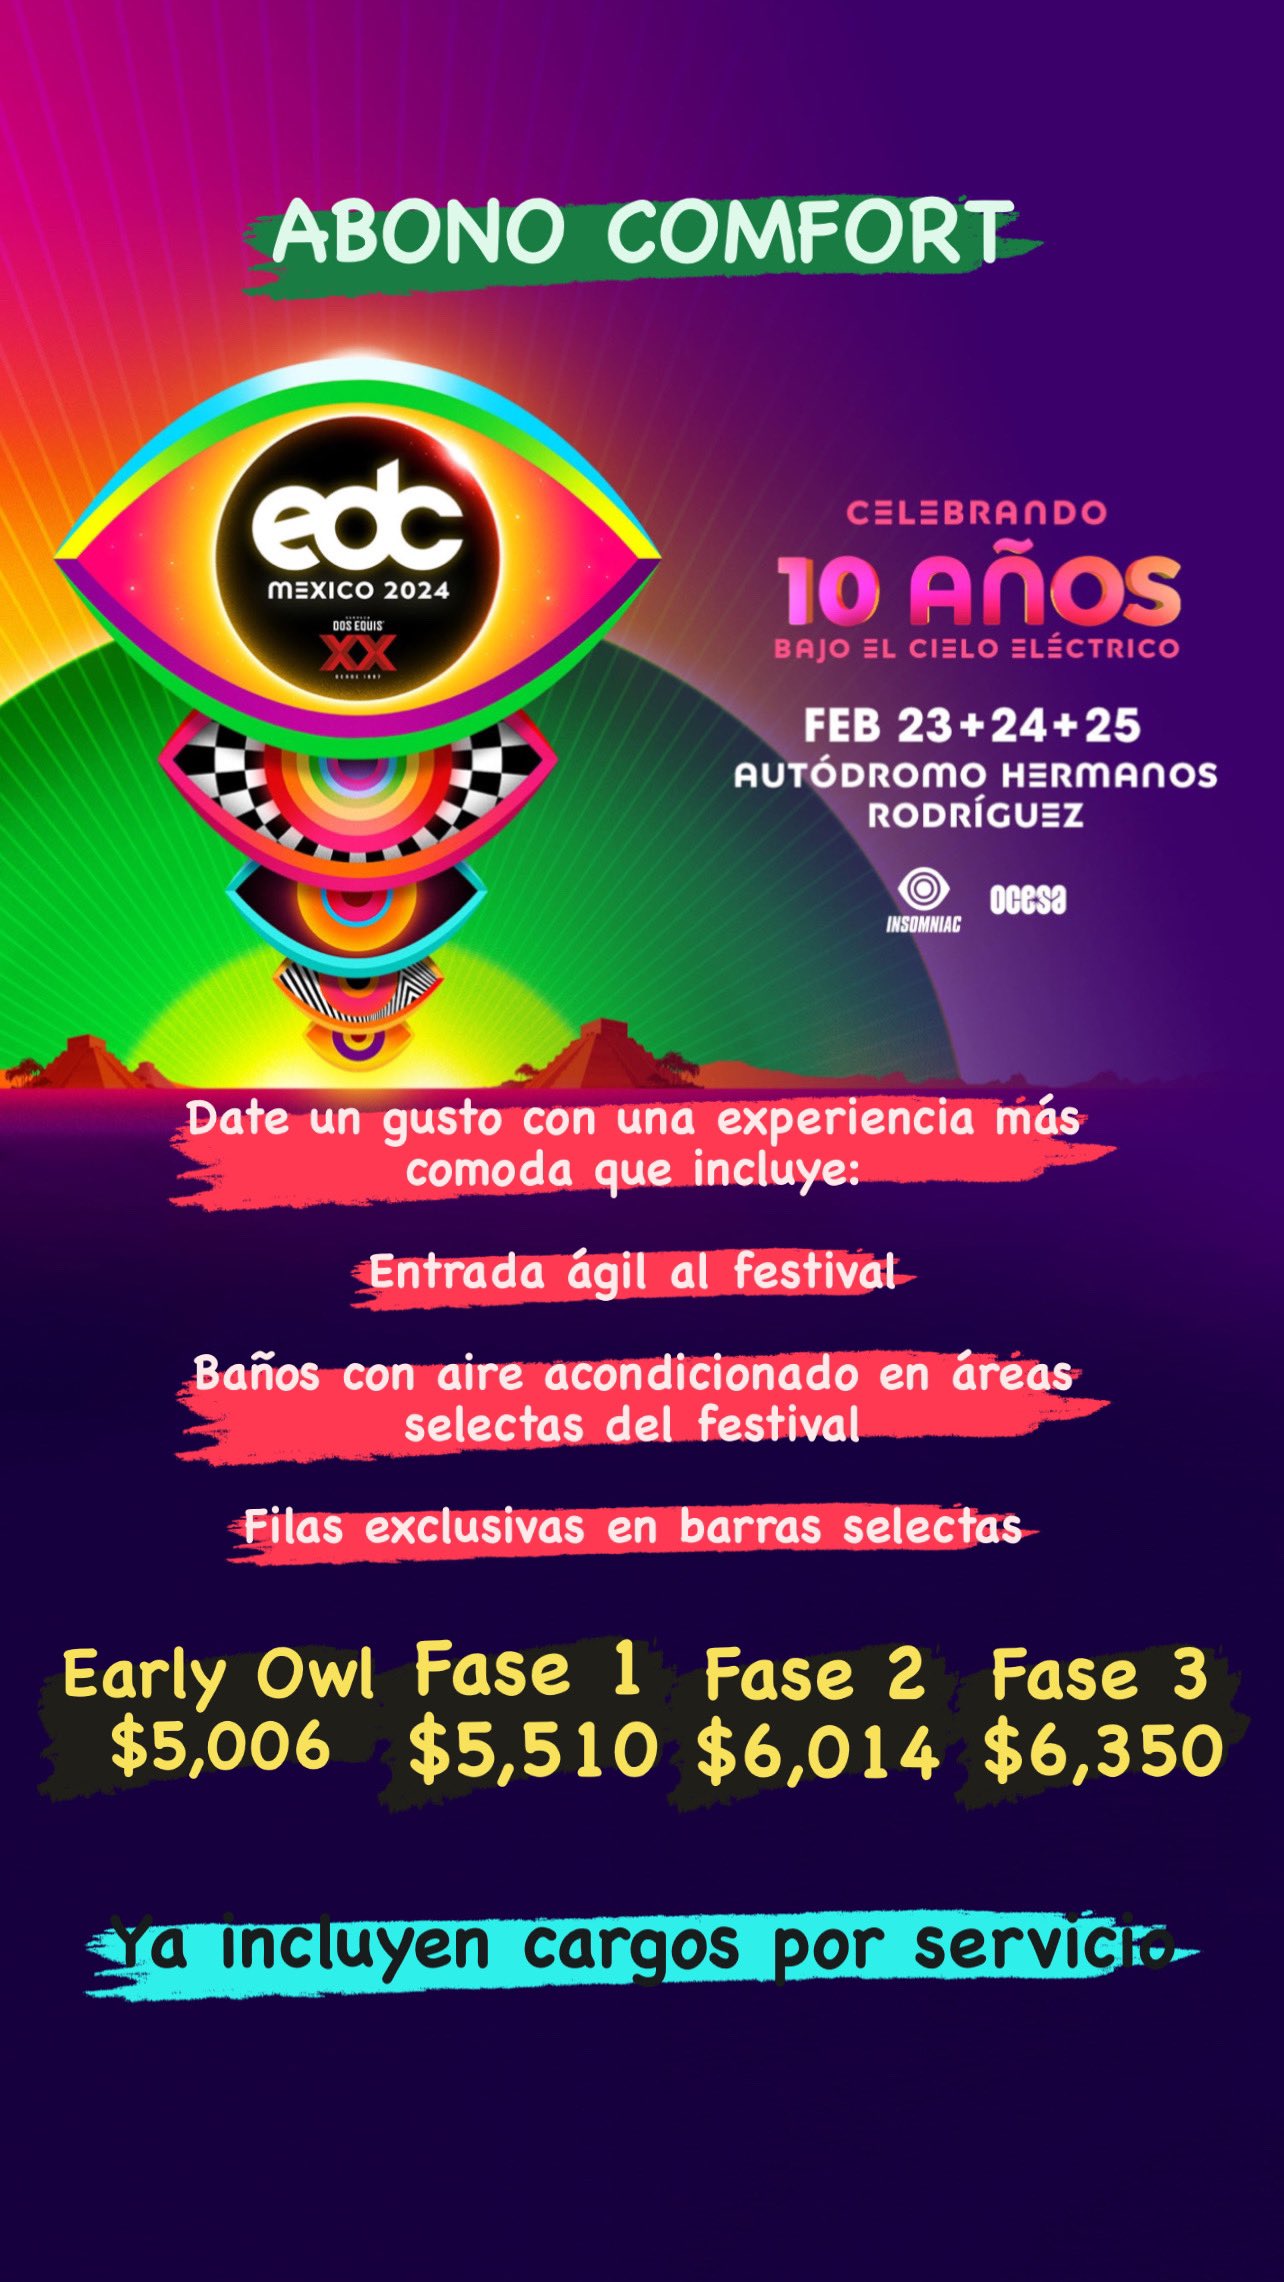 EDC México 2024: Insomniac y Ocesa presentan detalles del evento 14